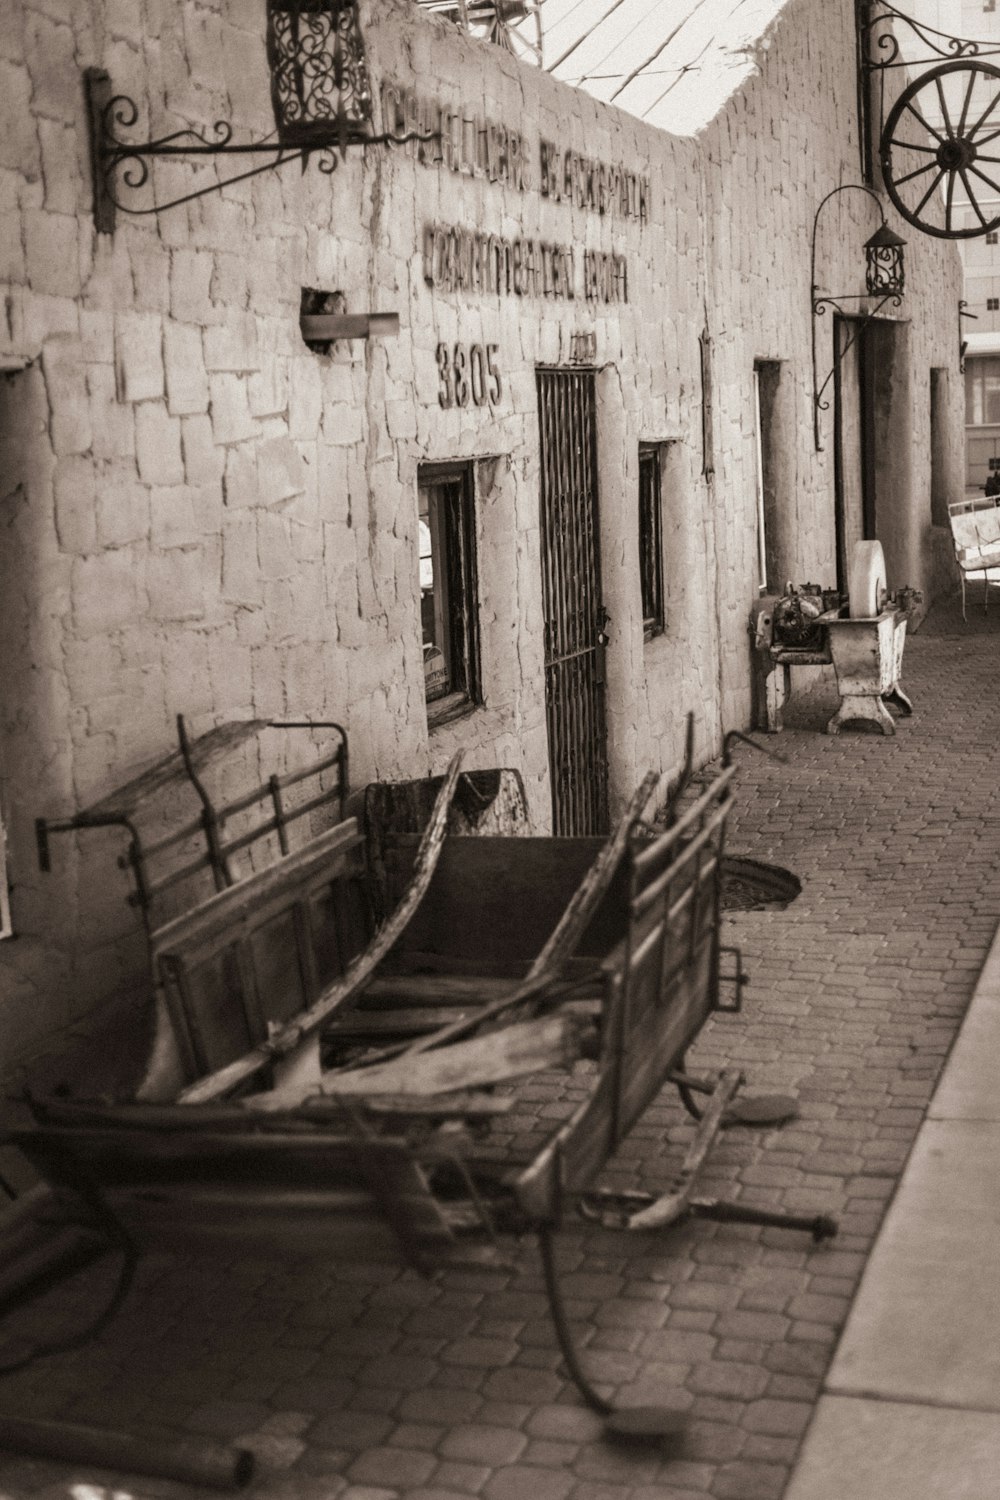 Una foto en blanco y negro de un edificio antiguo